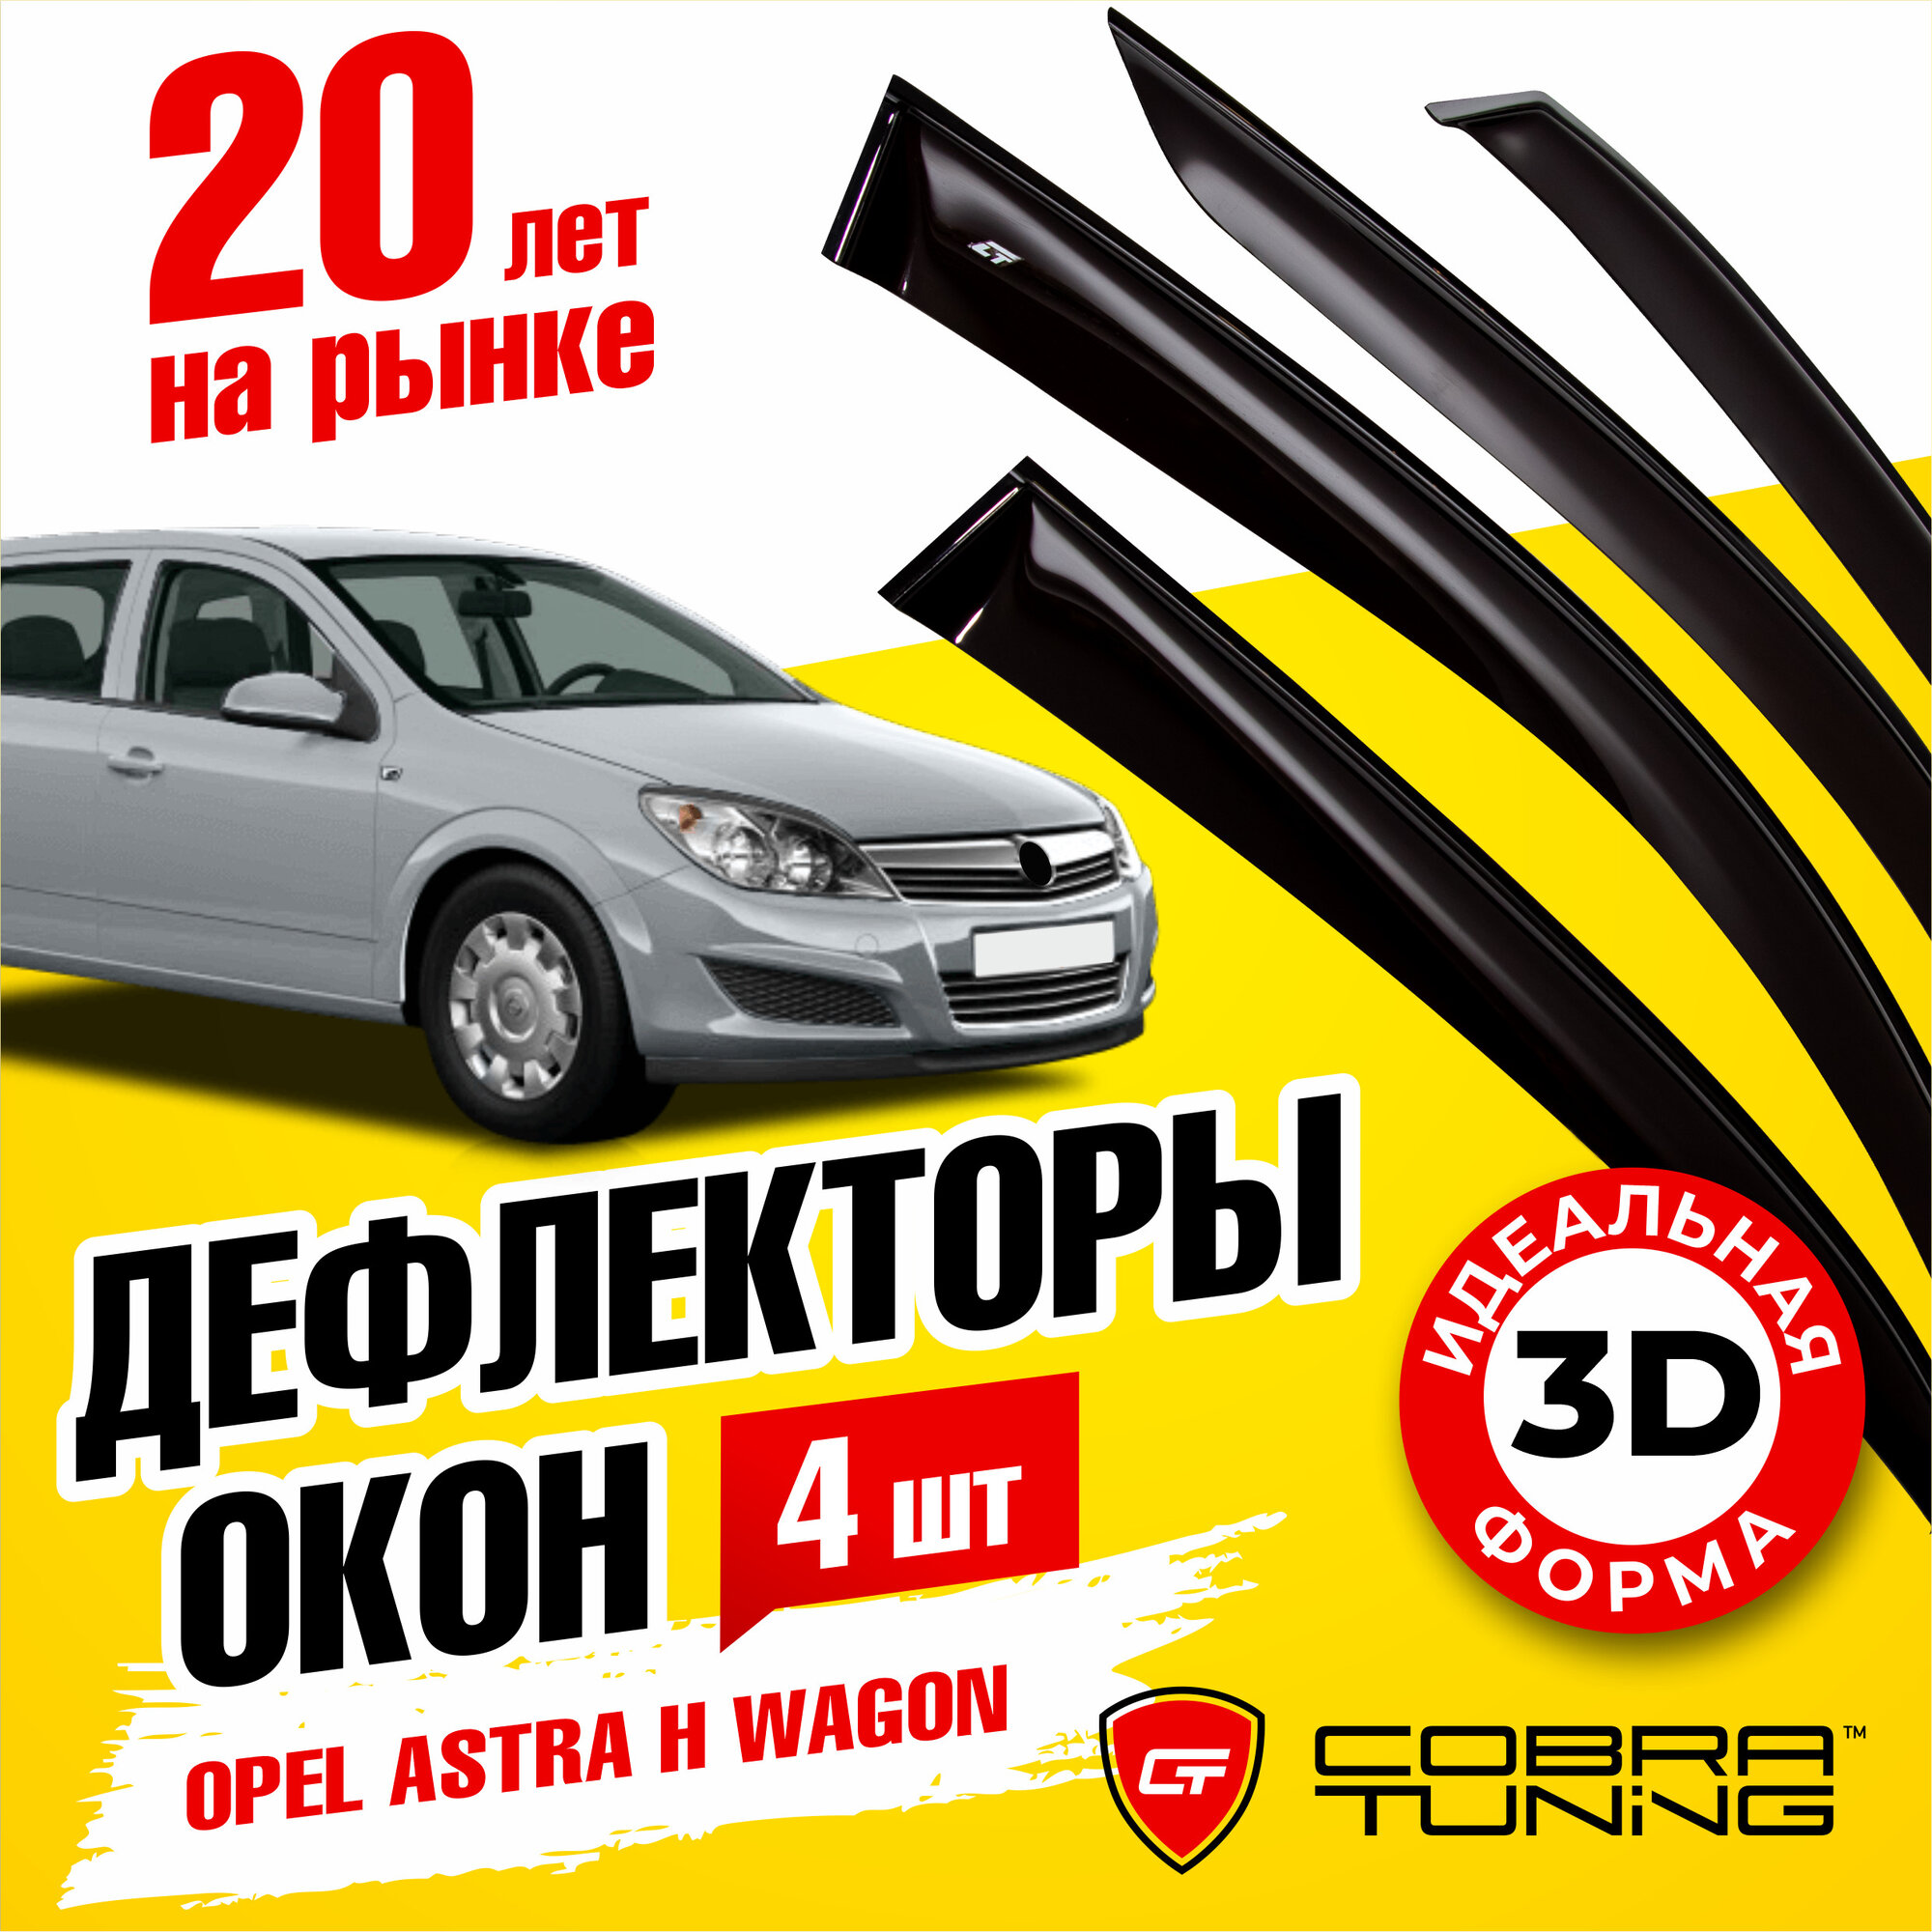 Дефлекторы боковых окон для Opel Astra (Опель Астра) wagon (универсал) H 2004-2014, ветровики на двери автомобиля, Cobra Tuning